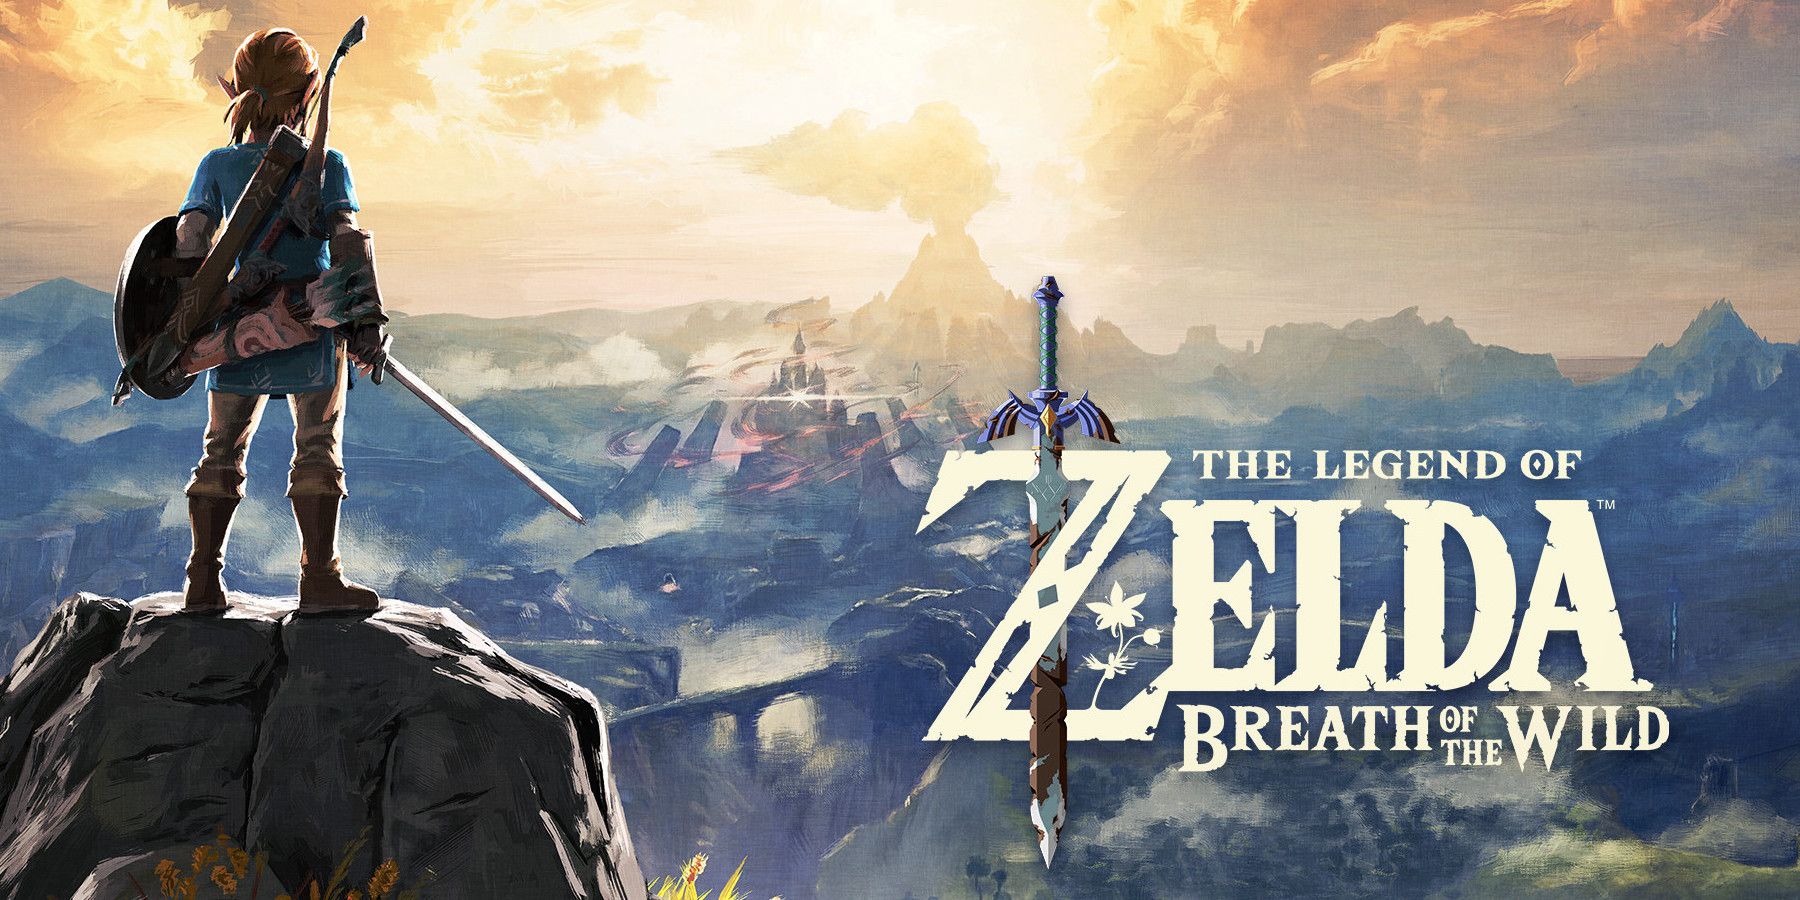 the legend of Zelda breath of the wild logo art